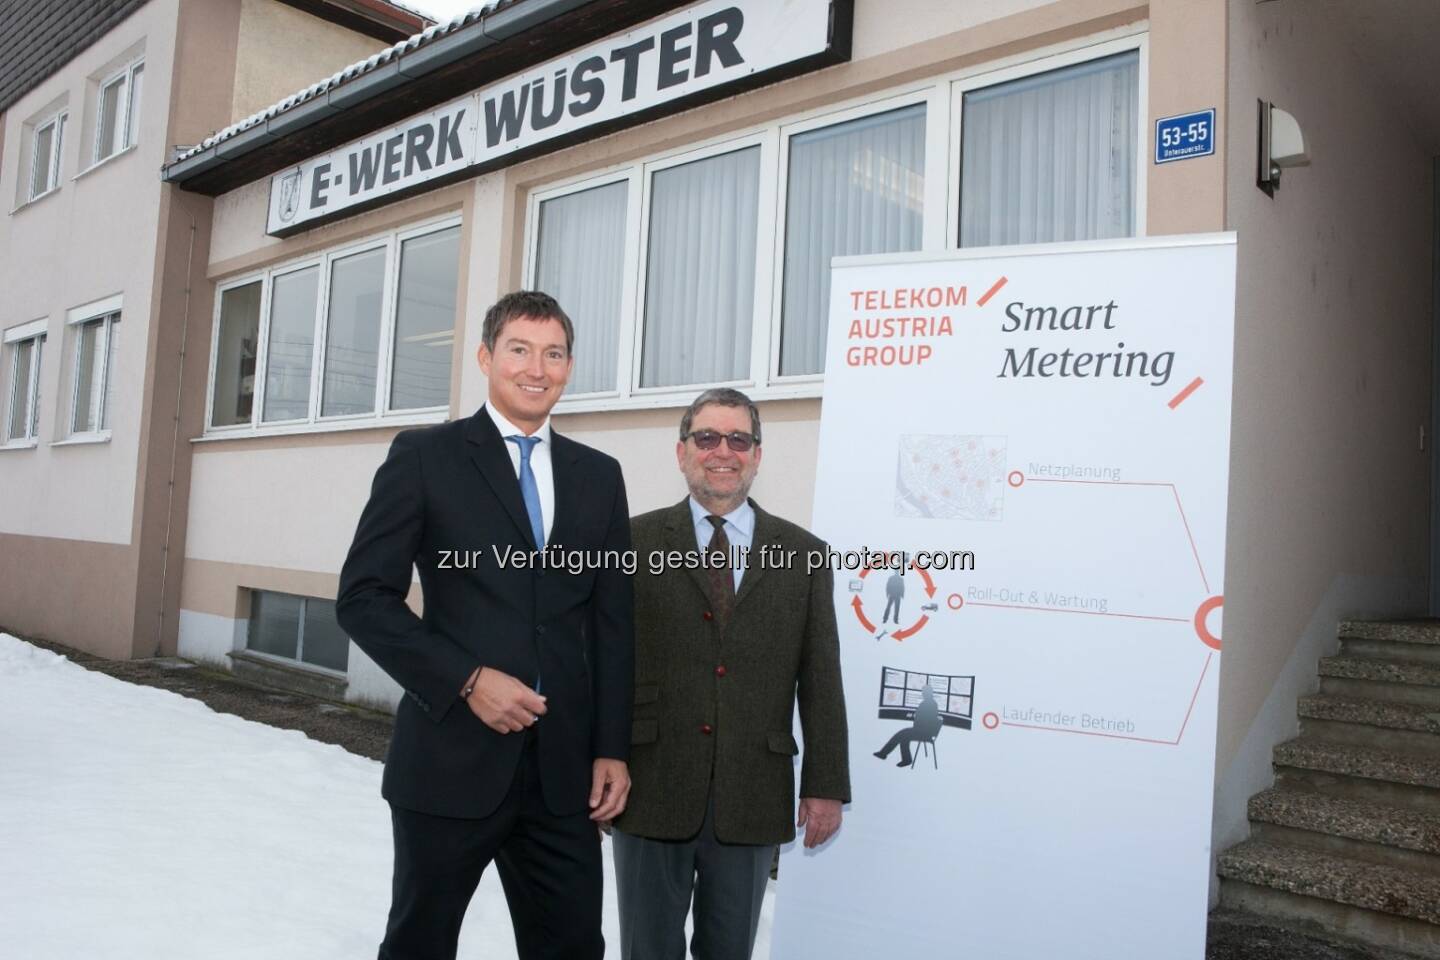 Bernd Liebscher (Geschäftsführer Telekom Austria Group M2M) und Peter Wüster (Geschäftsführer E-Werk Wüster) - Telekom Austria Group M2M und E-Werk Wüster realisieren erste umfassende Einführung von Smart Metering in Österreich. (Bild: TAG/APA/Nielsen)